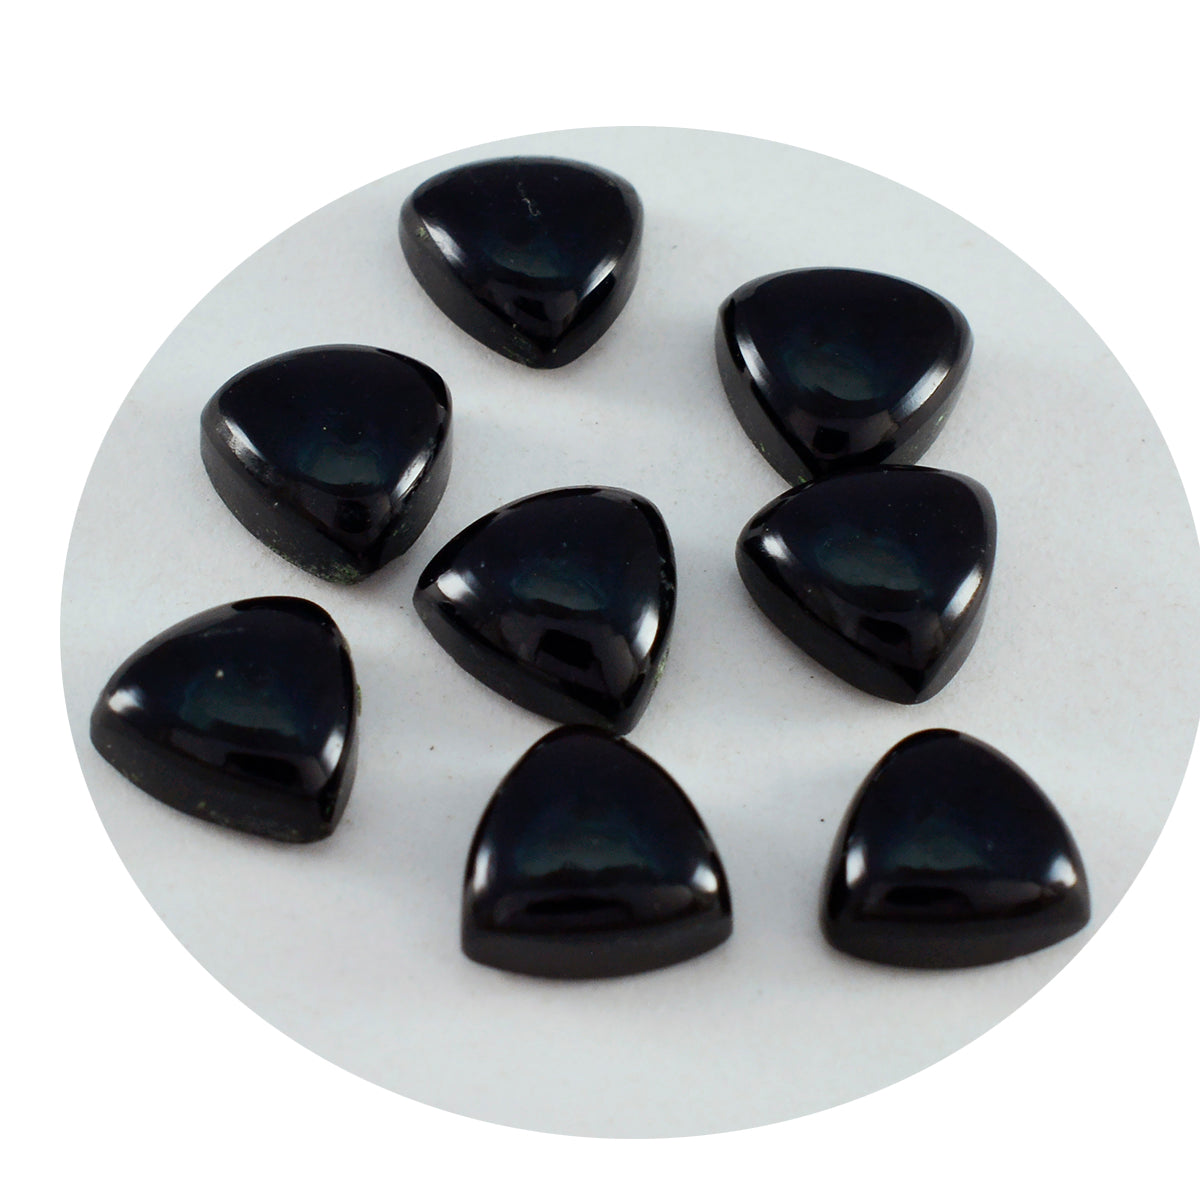 Riyogems 1 Stück schwarzer Onyx-Cabochon, 7 x 7 mm, Trillion-Form, Edelstein in AA-Qualität